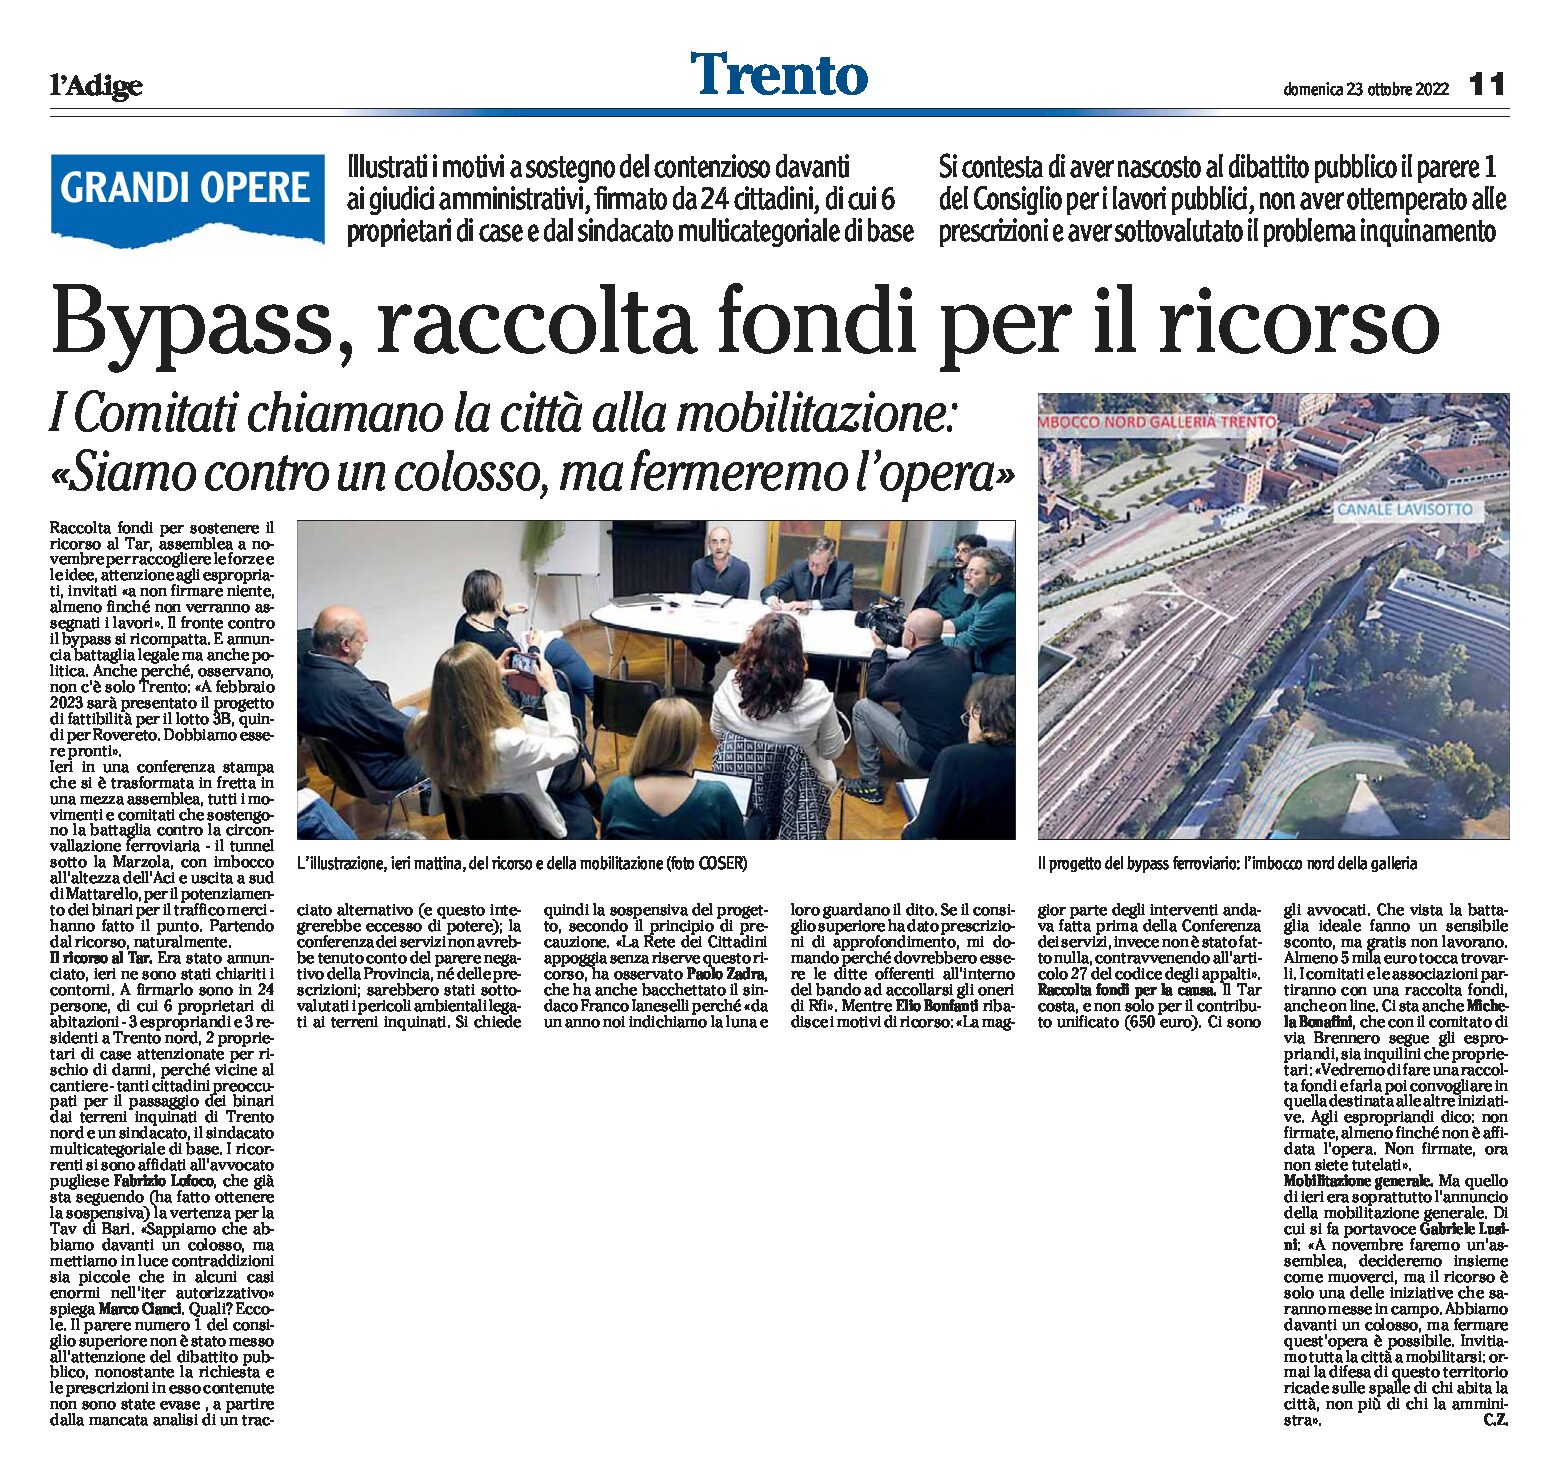 Trento, bypass: raccolta fondi per il ricorso. I comitati chiamano la città alla mobilitazione